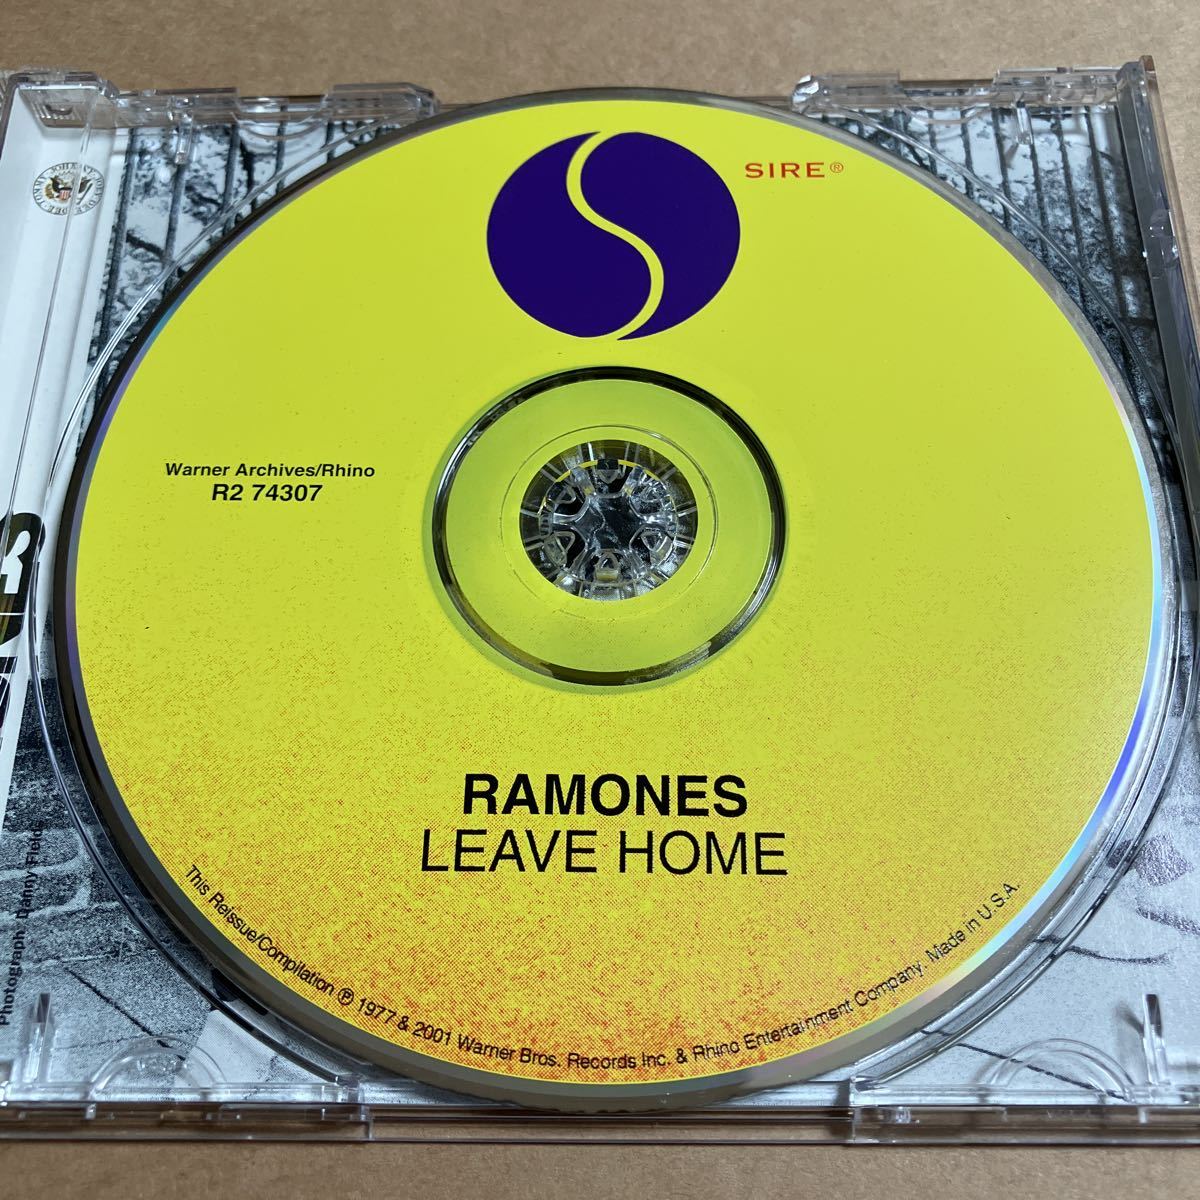 CD RAMONES / LEAVE HOME R274307 リマスター盤 ボーナストラックあり スリーブケース傷み_画像4